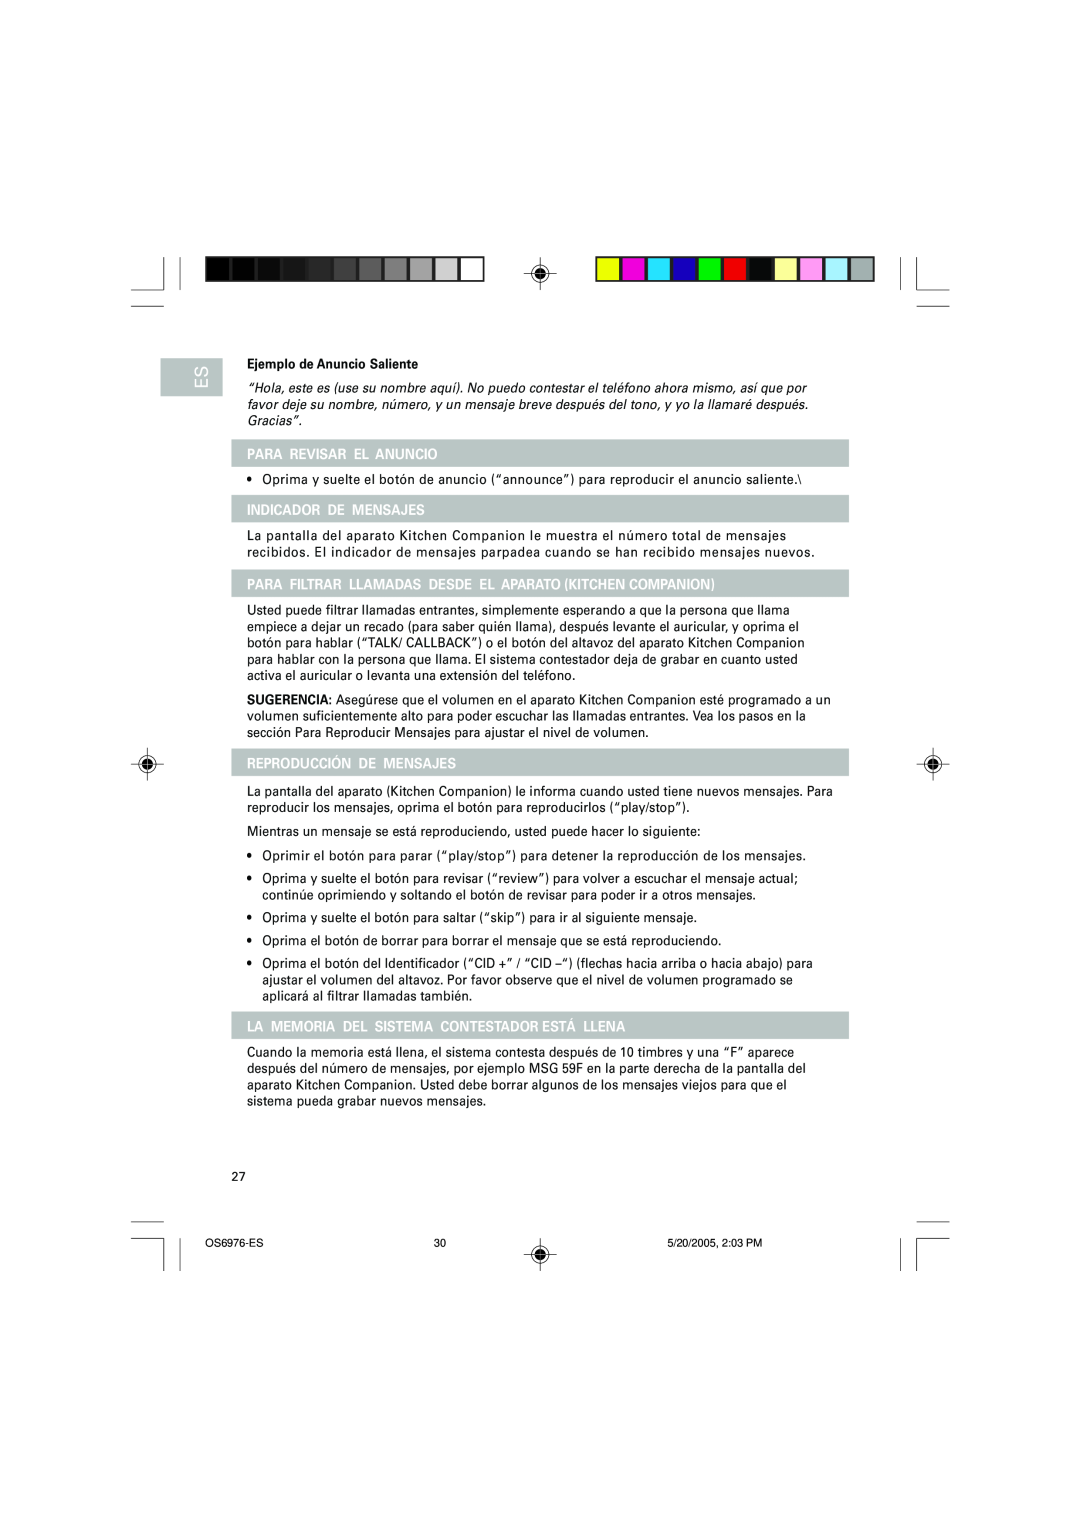 Oregon Scientific OS6976 user manual Para Revisar El Anuncio, Indicador De Mensajes, Reproducción De Mensajes 